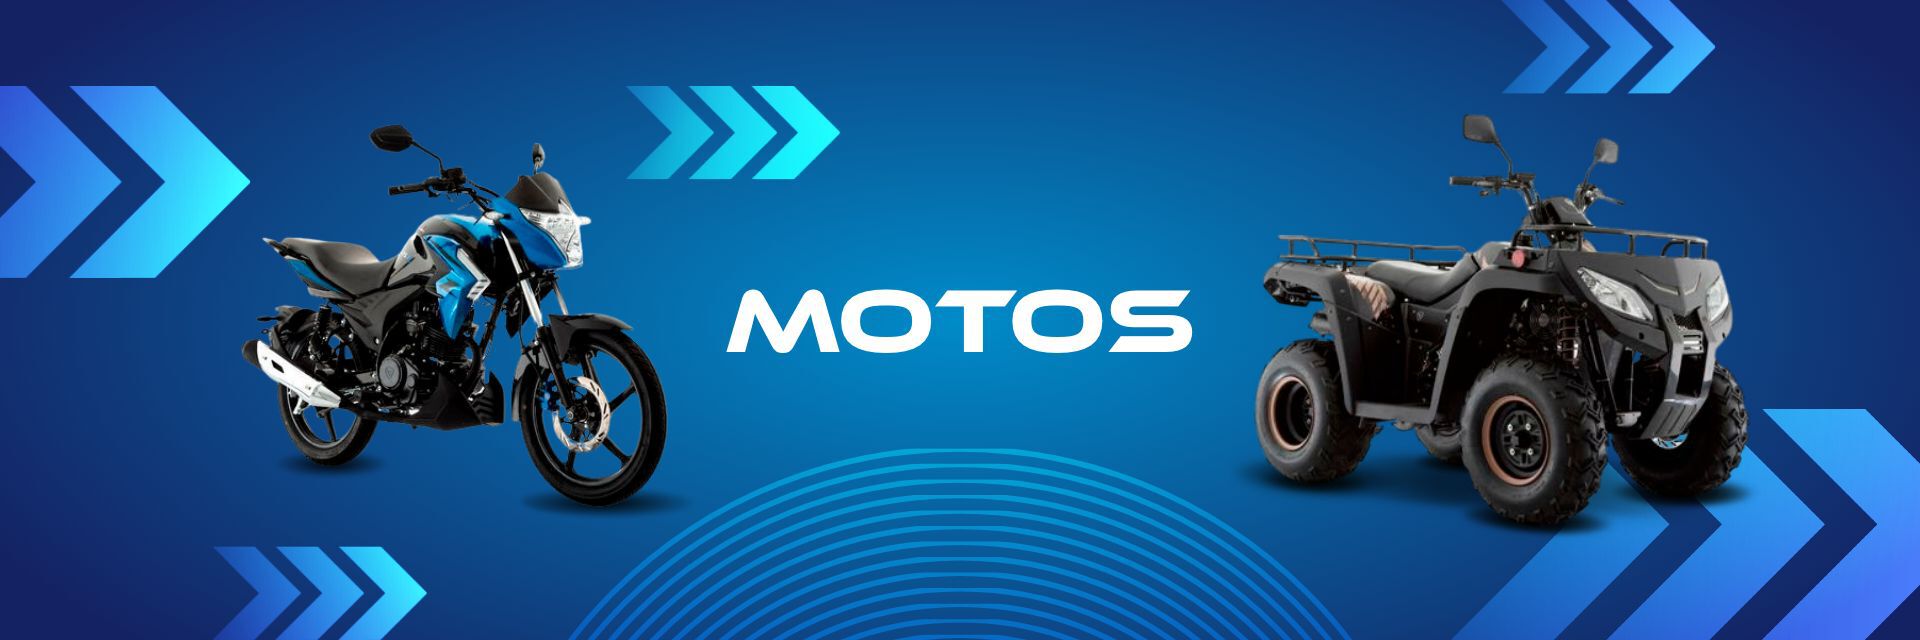 Banner Promocional Motos